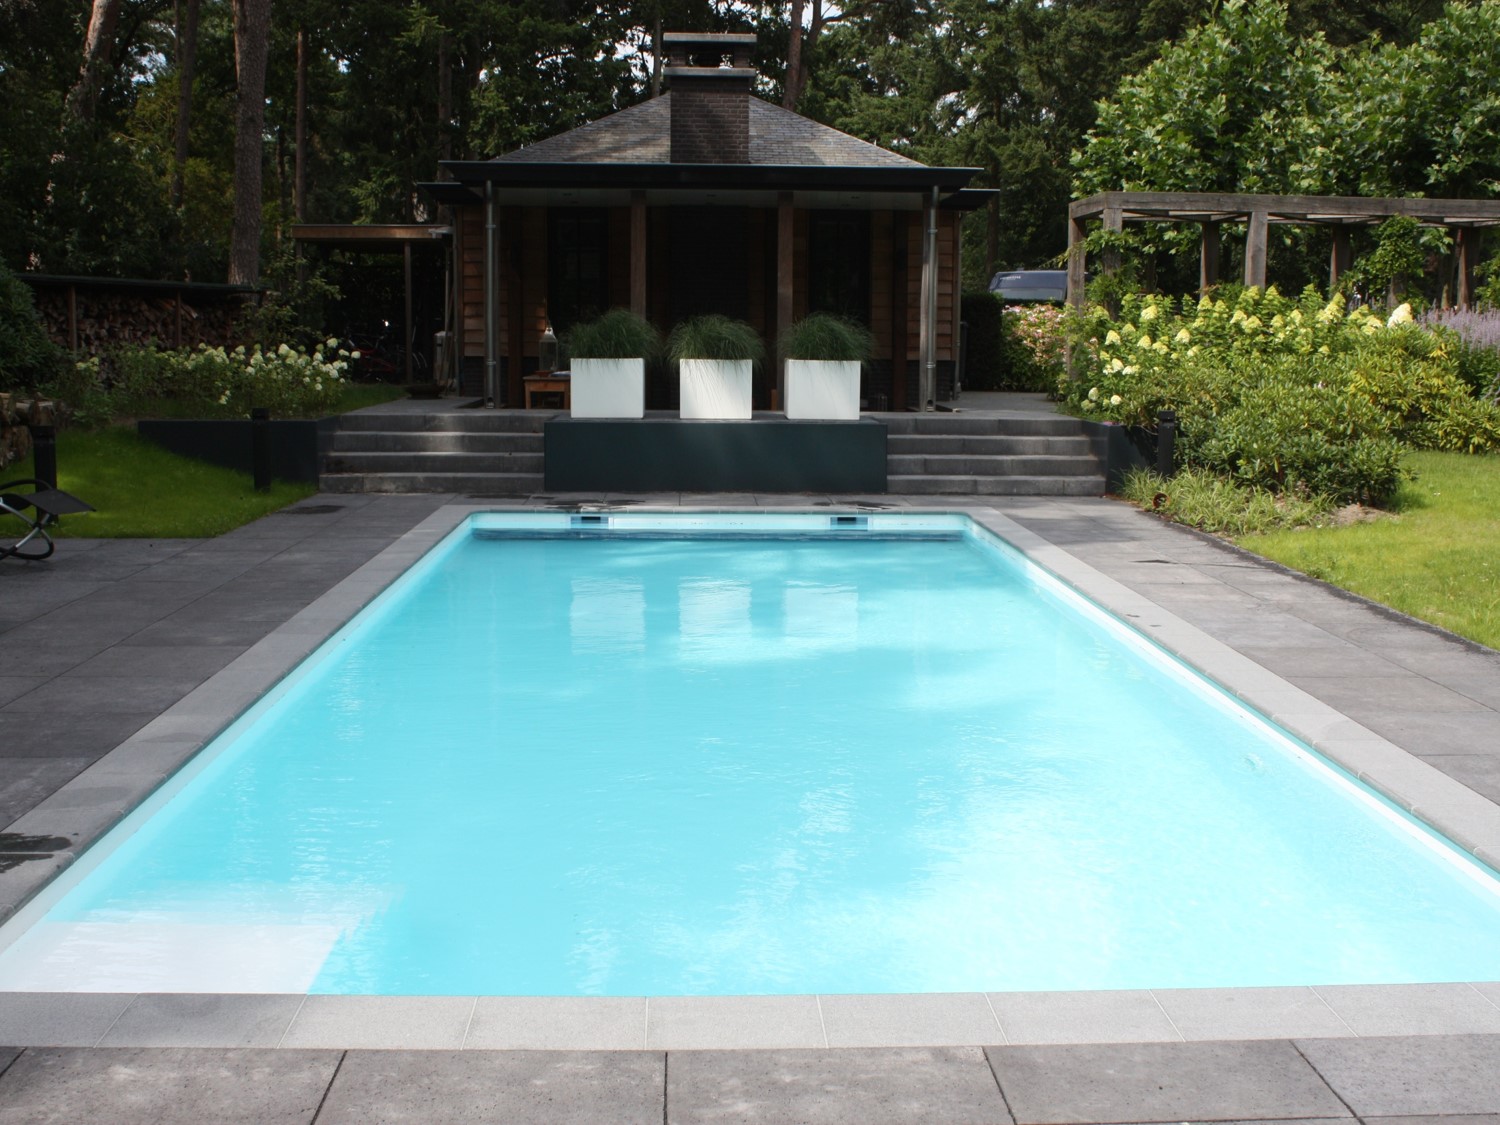 De Intelligent Pool XL van SWIMM; een groter zwembad waar het hele gezin van kan genieten.